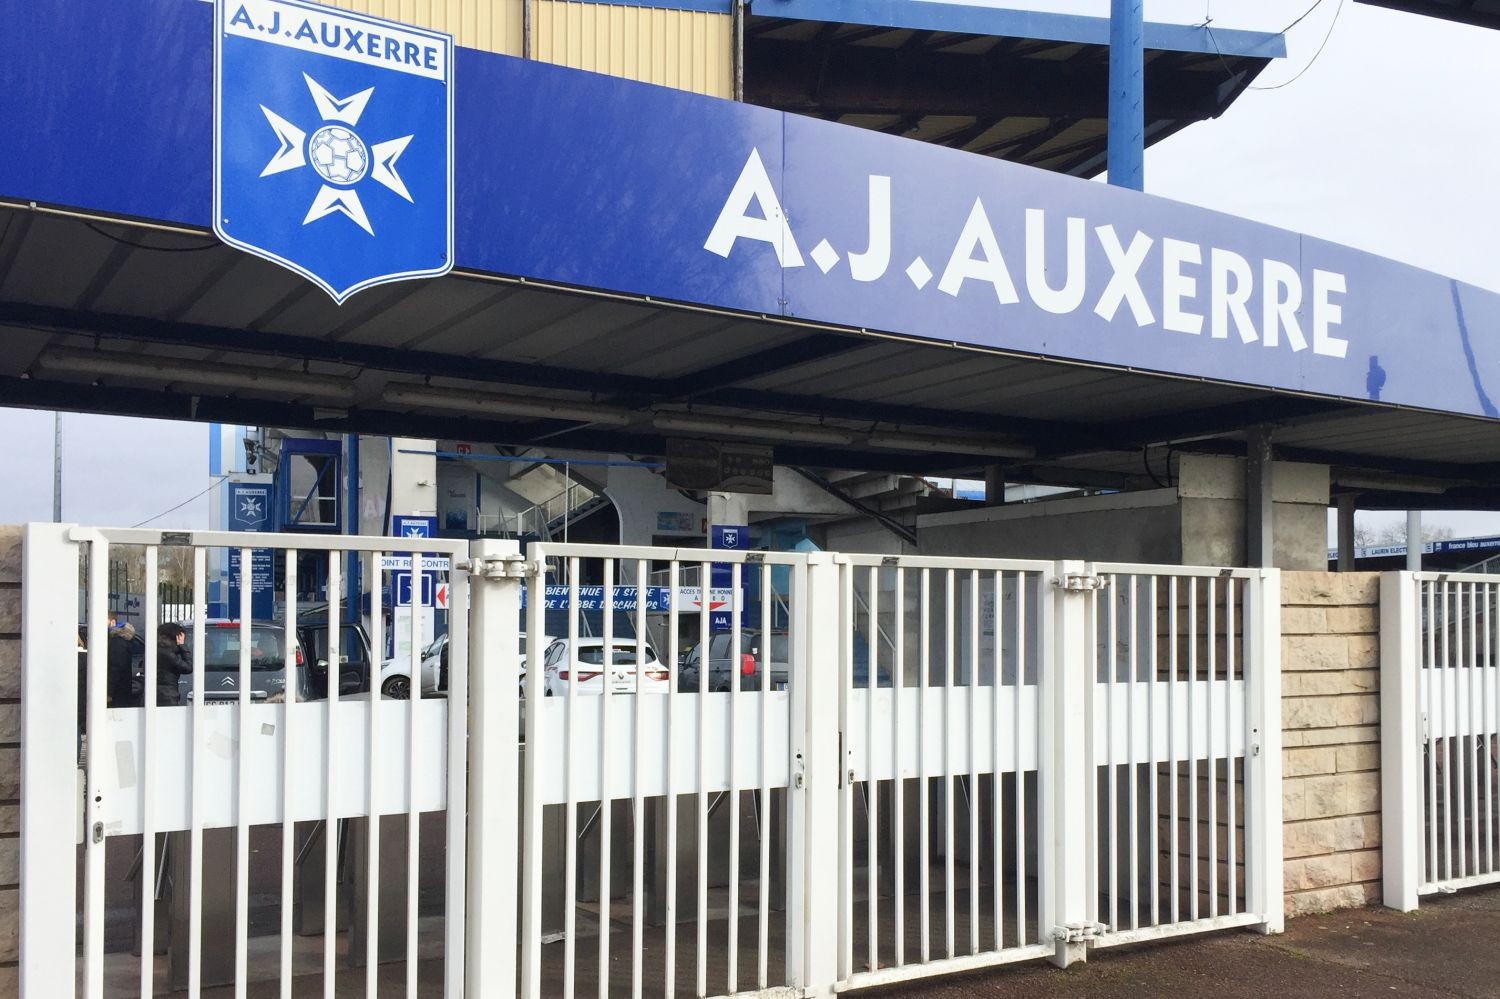 OFICJALNIE: AJ Auxerre ogłosiło nowego trenera